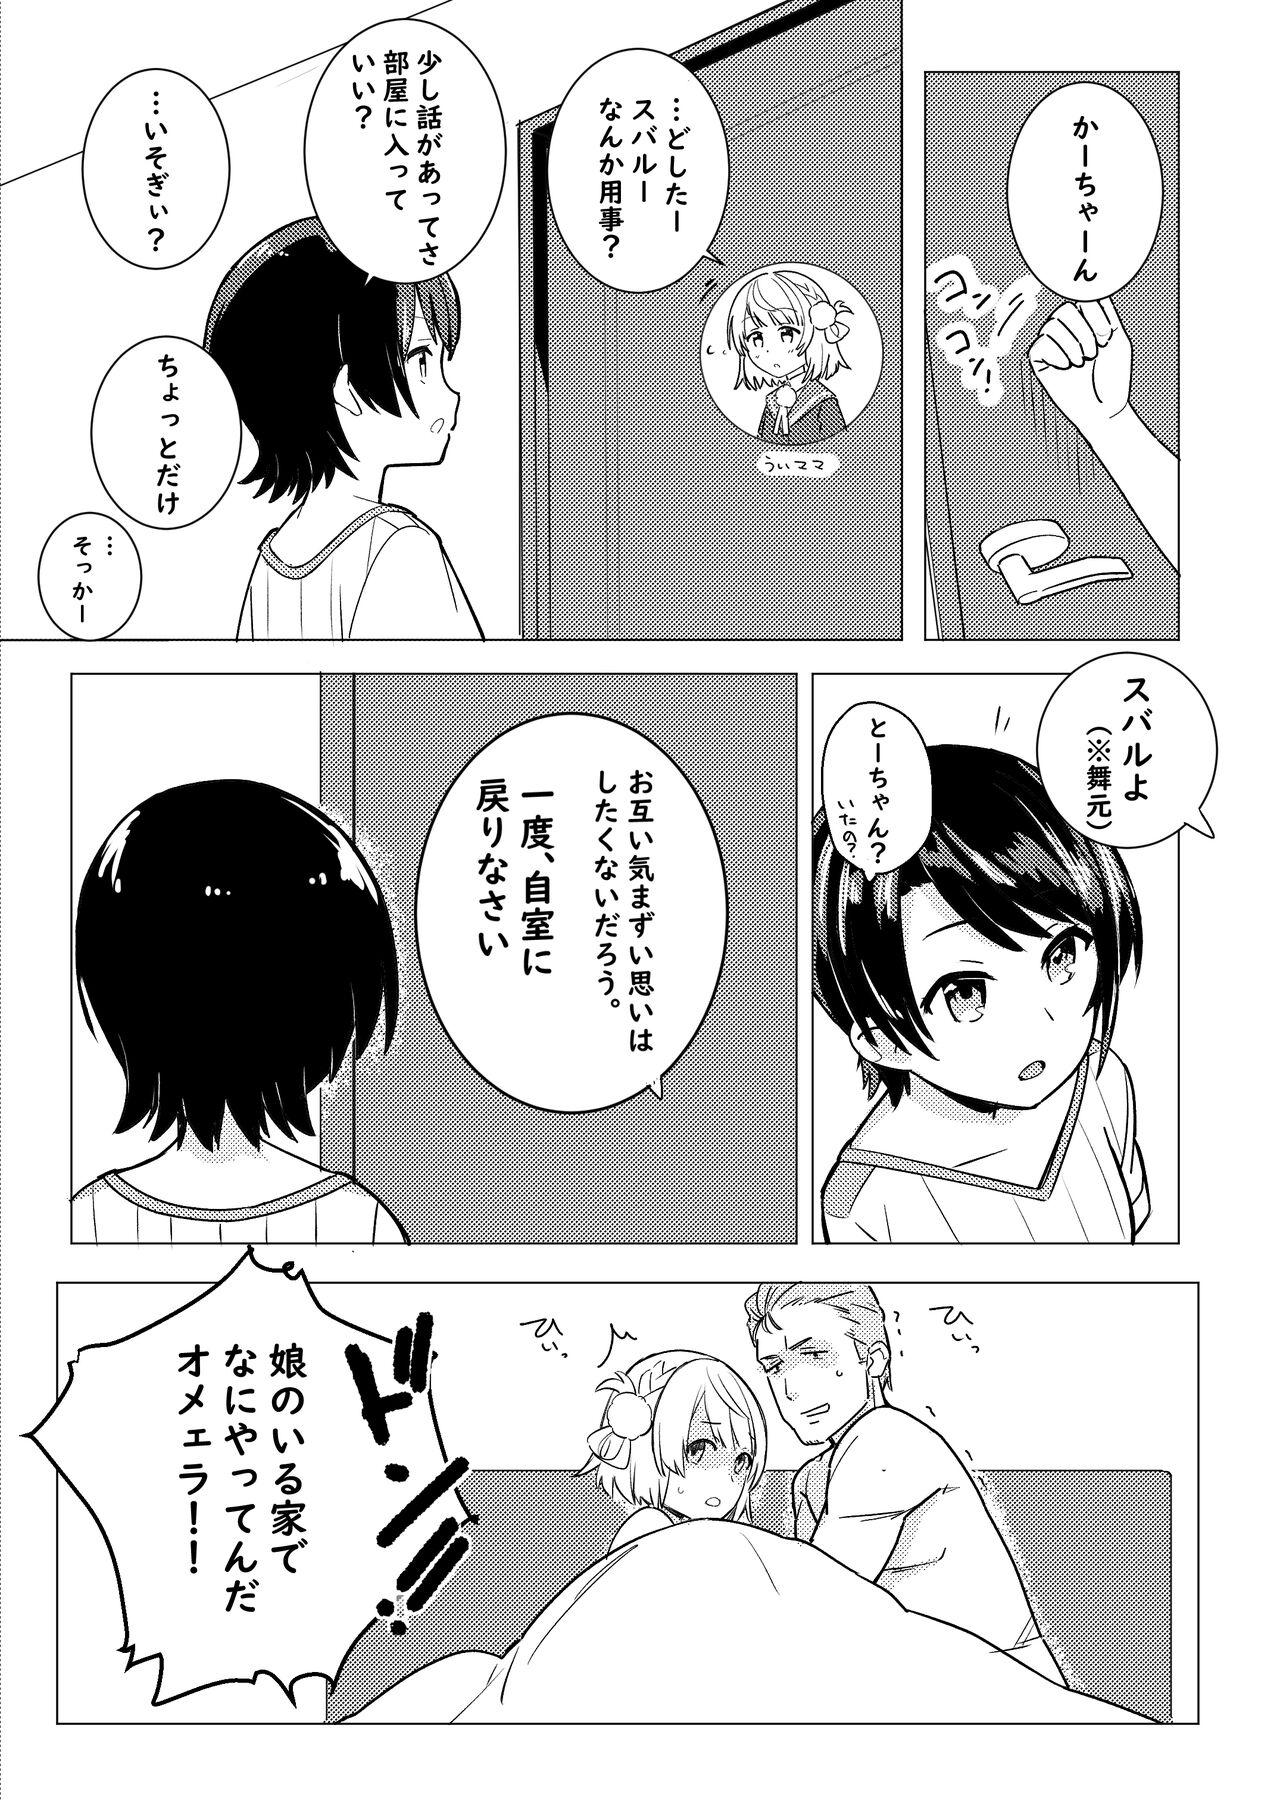 Petite Teen Twitter Short Manga - Hololive Analfucking - Page 5